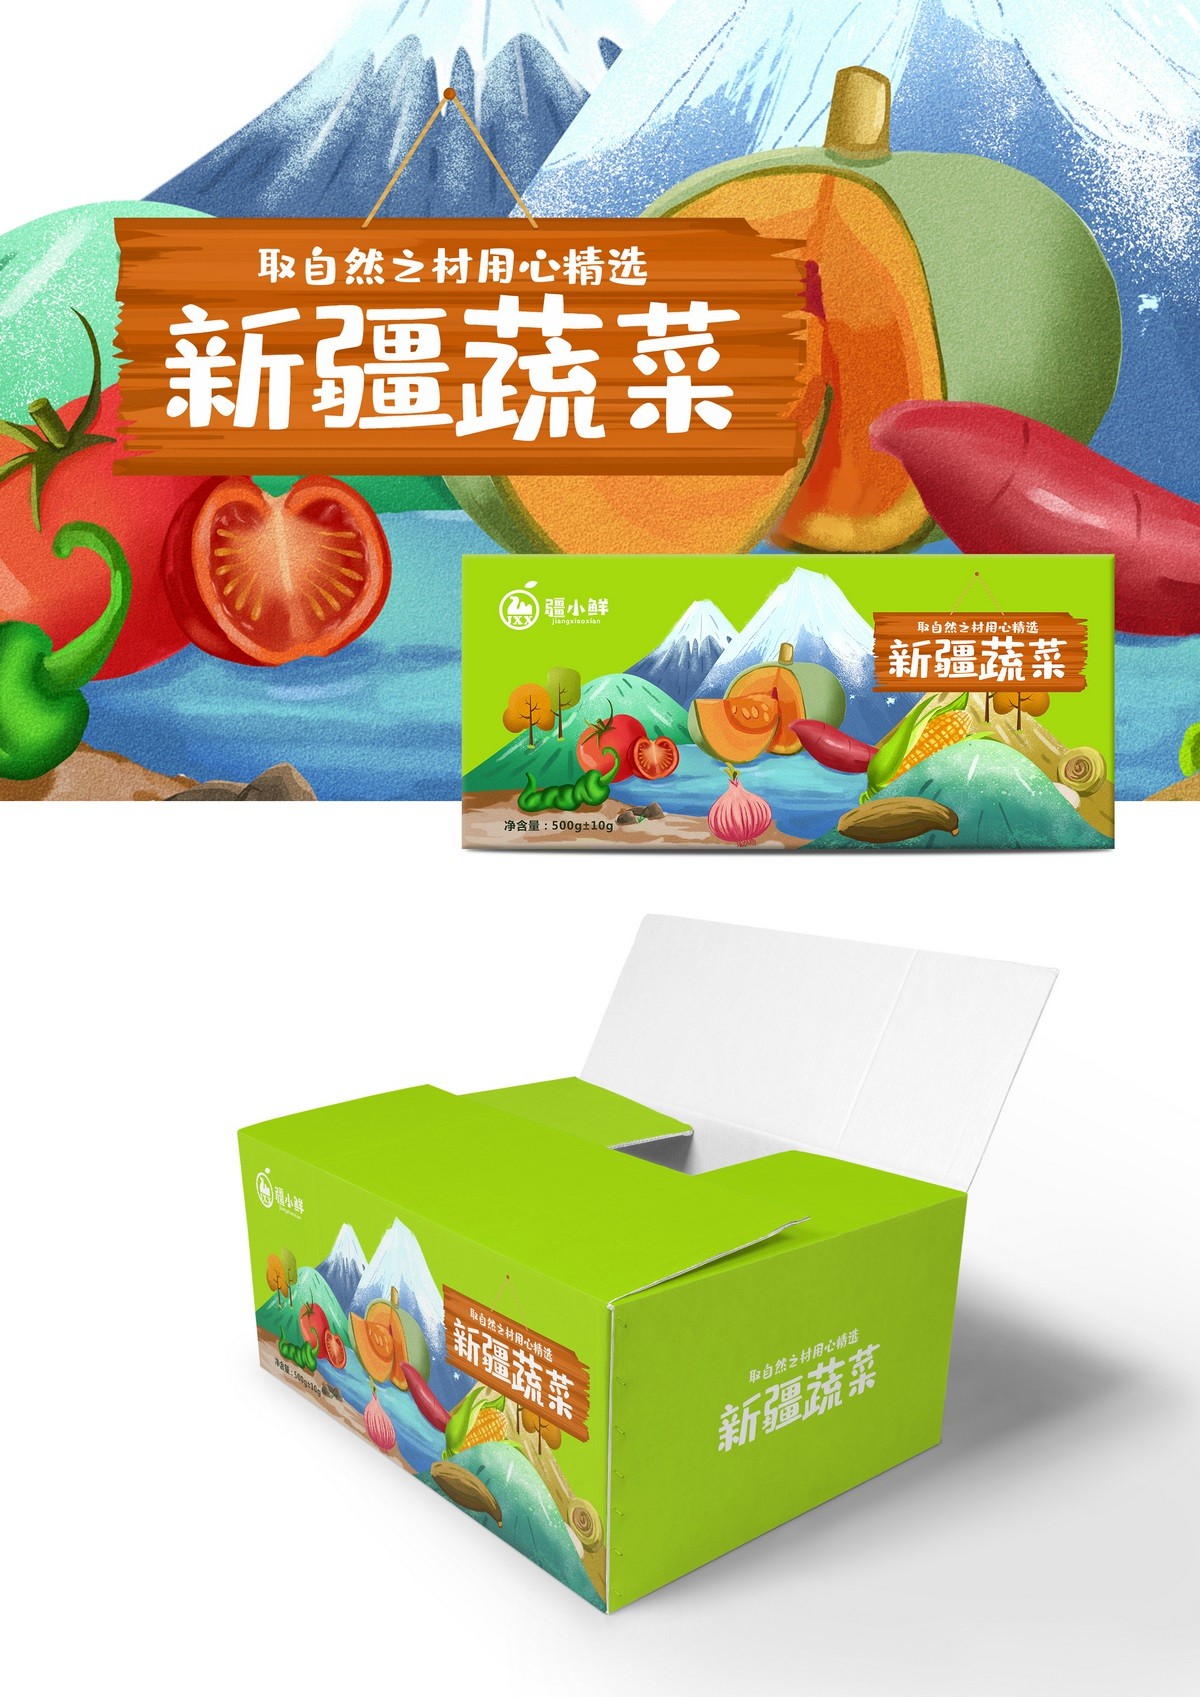 热门贵州礼盒包装设计公司作品排名前十名单推出 